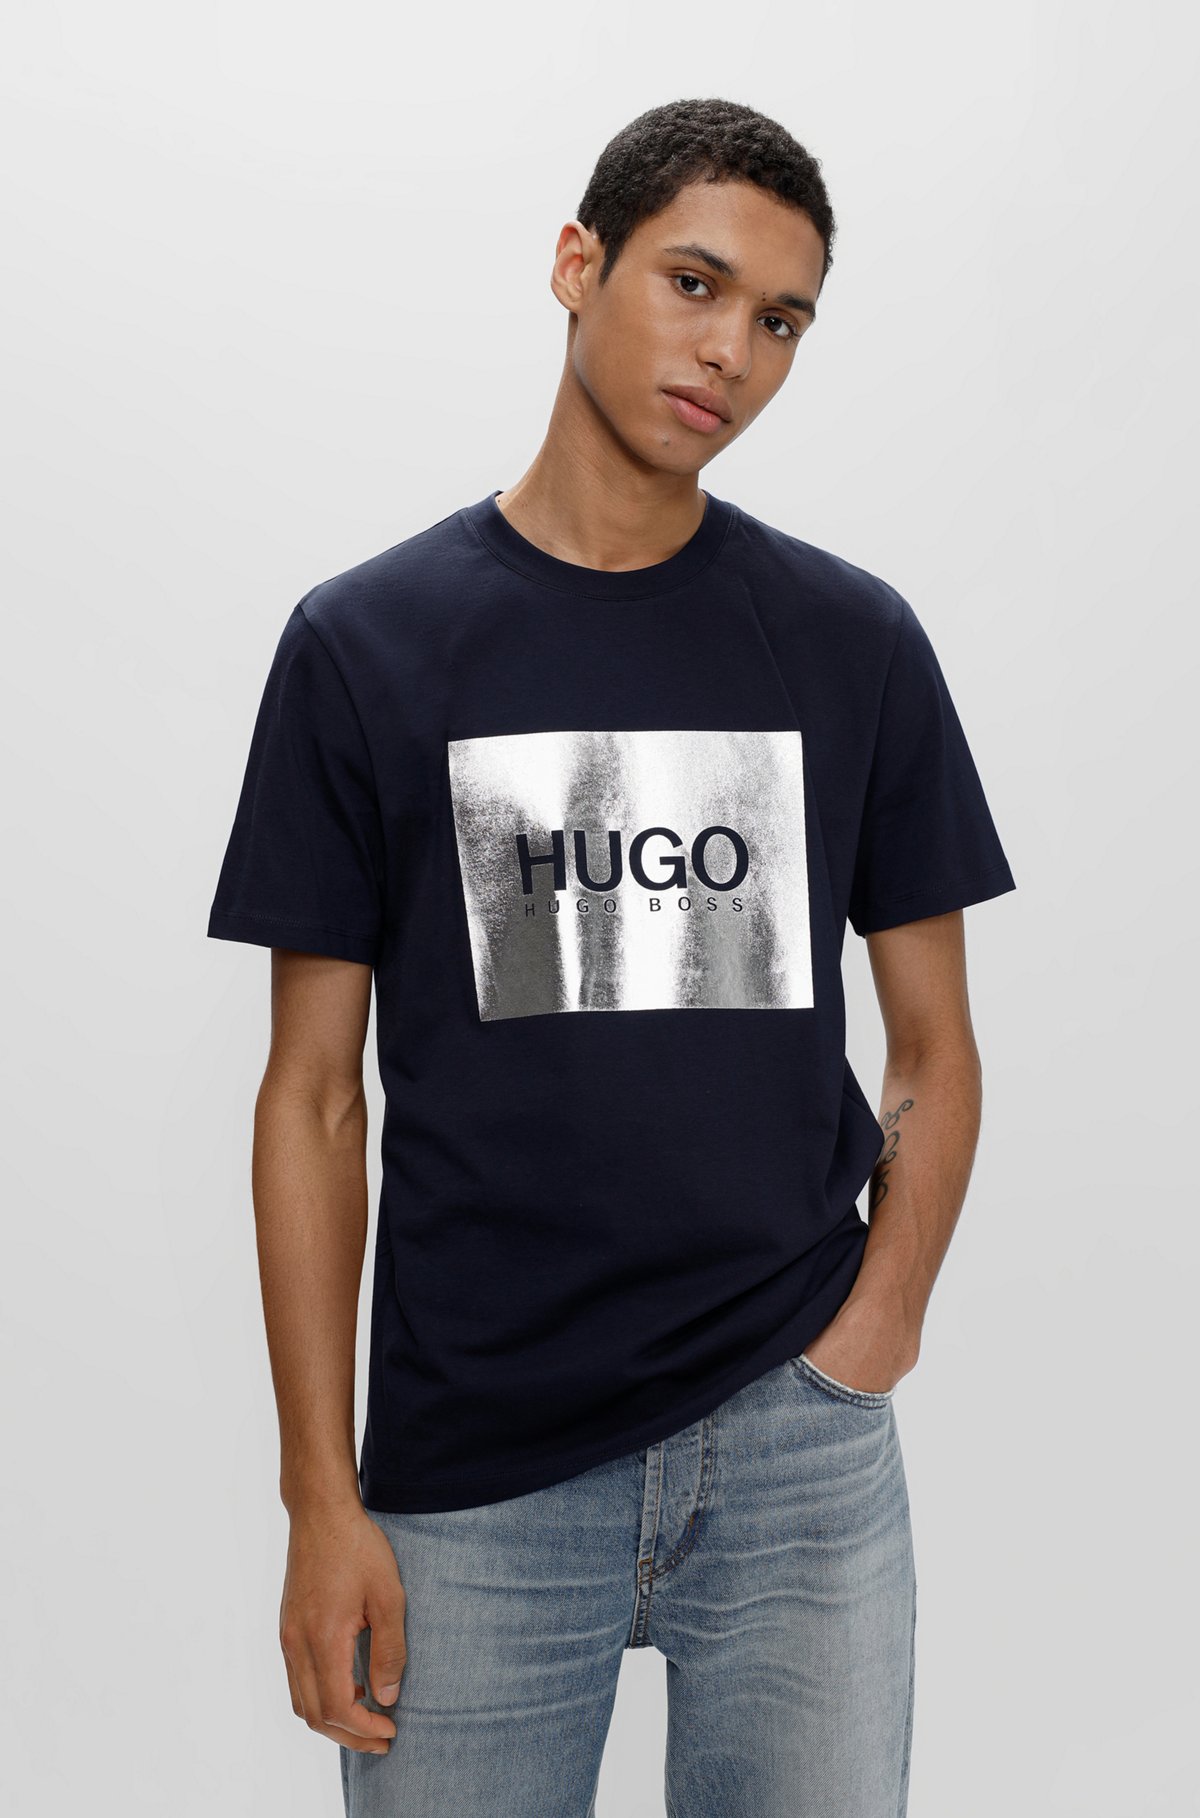 Купить футболку hugo. Футболка Хуго. Хуго футболка мужская. Футболка Hugo 2023. Футболка Hugo Boss мужская черная с красной вышивкой.